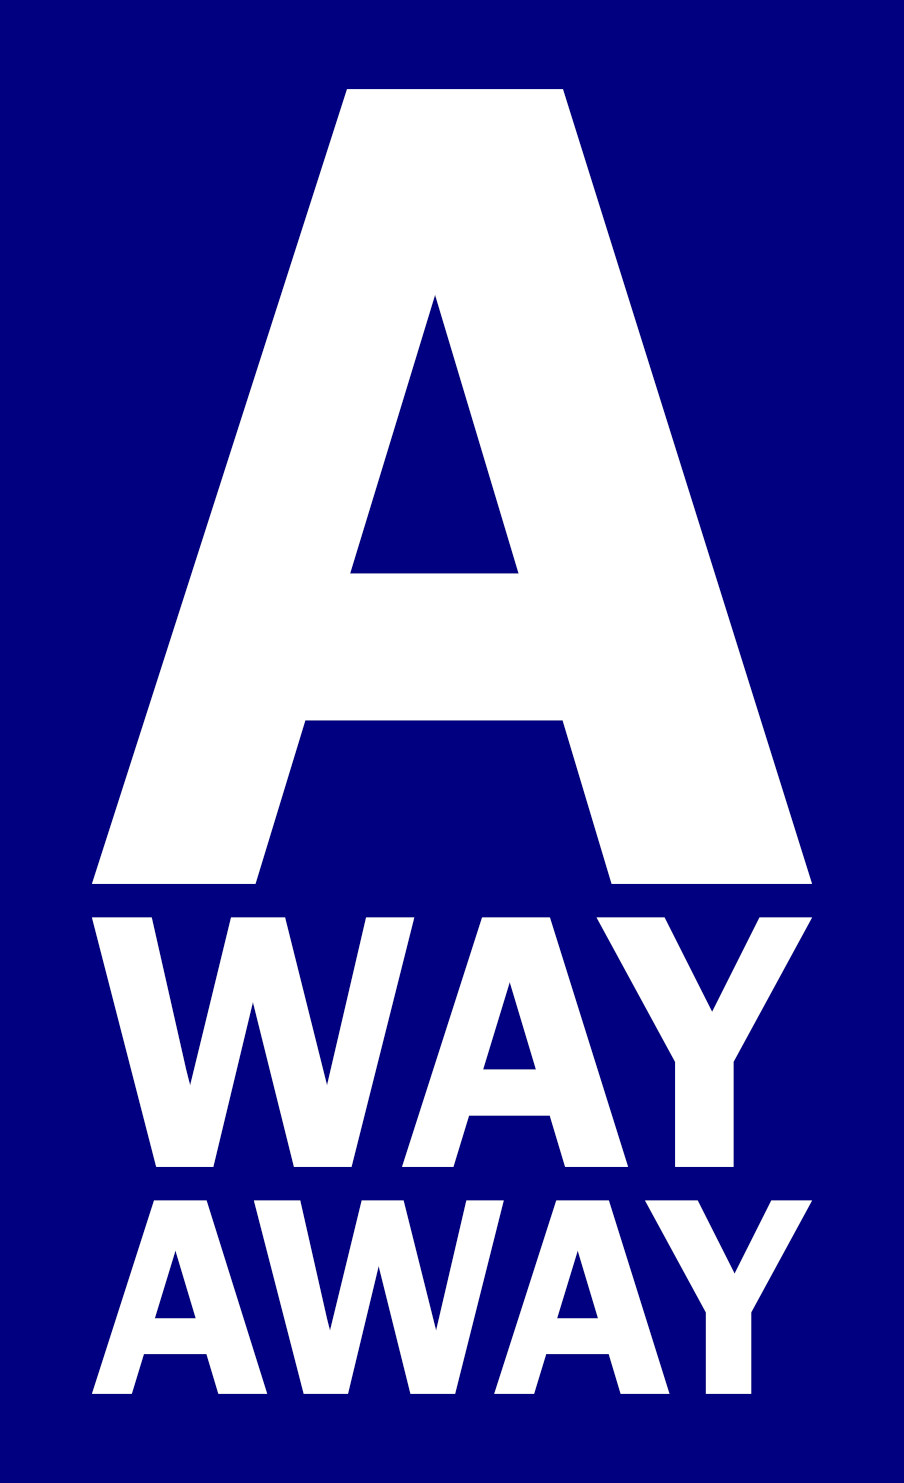 A Way Away logo.